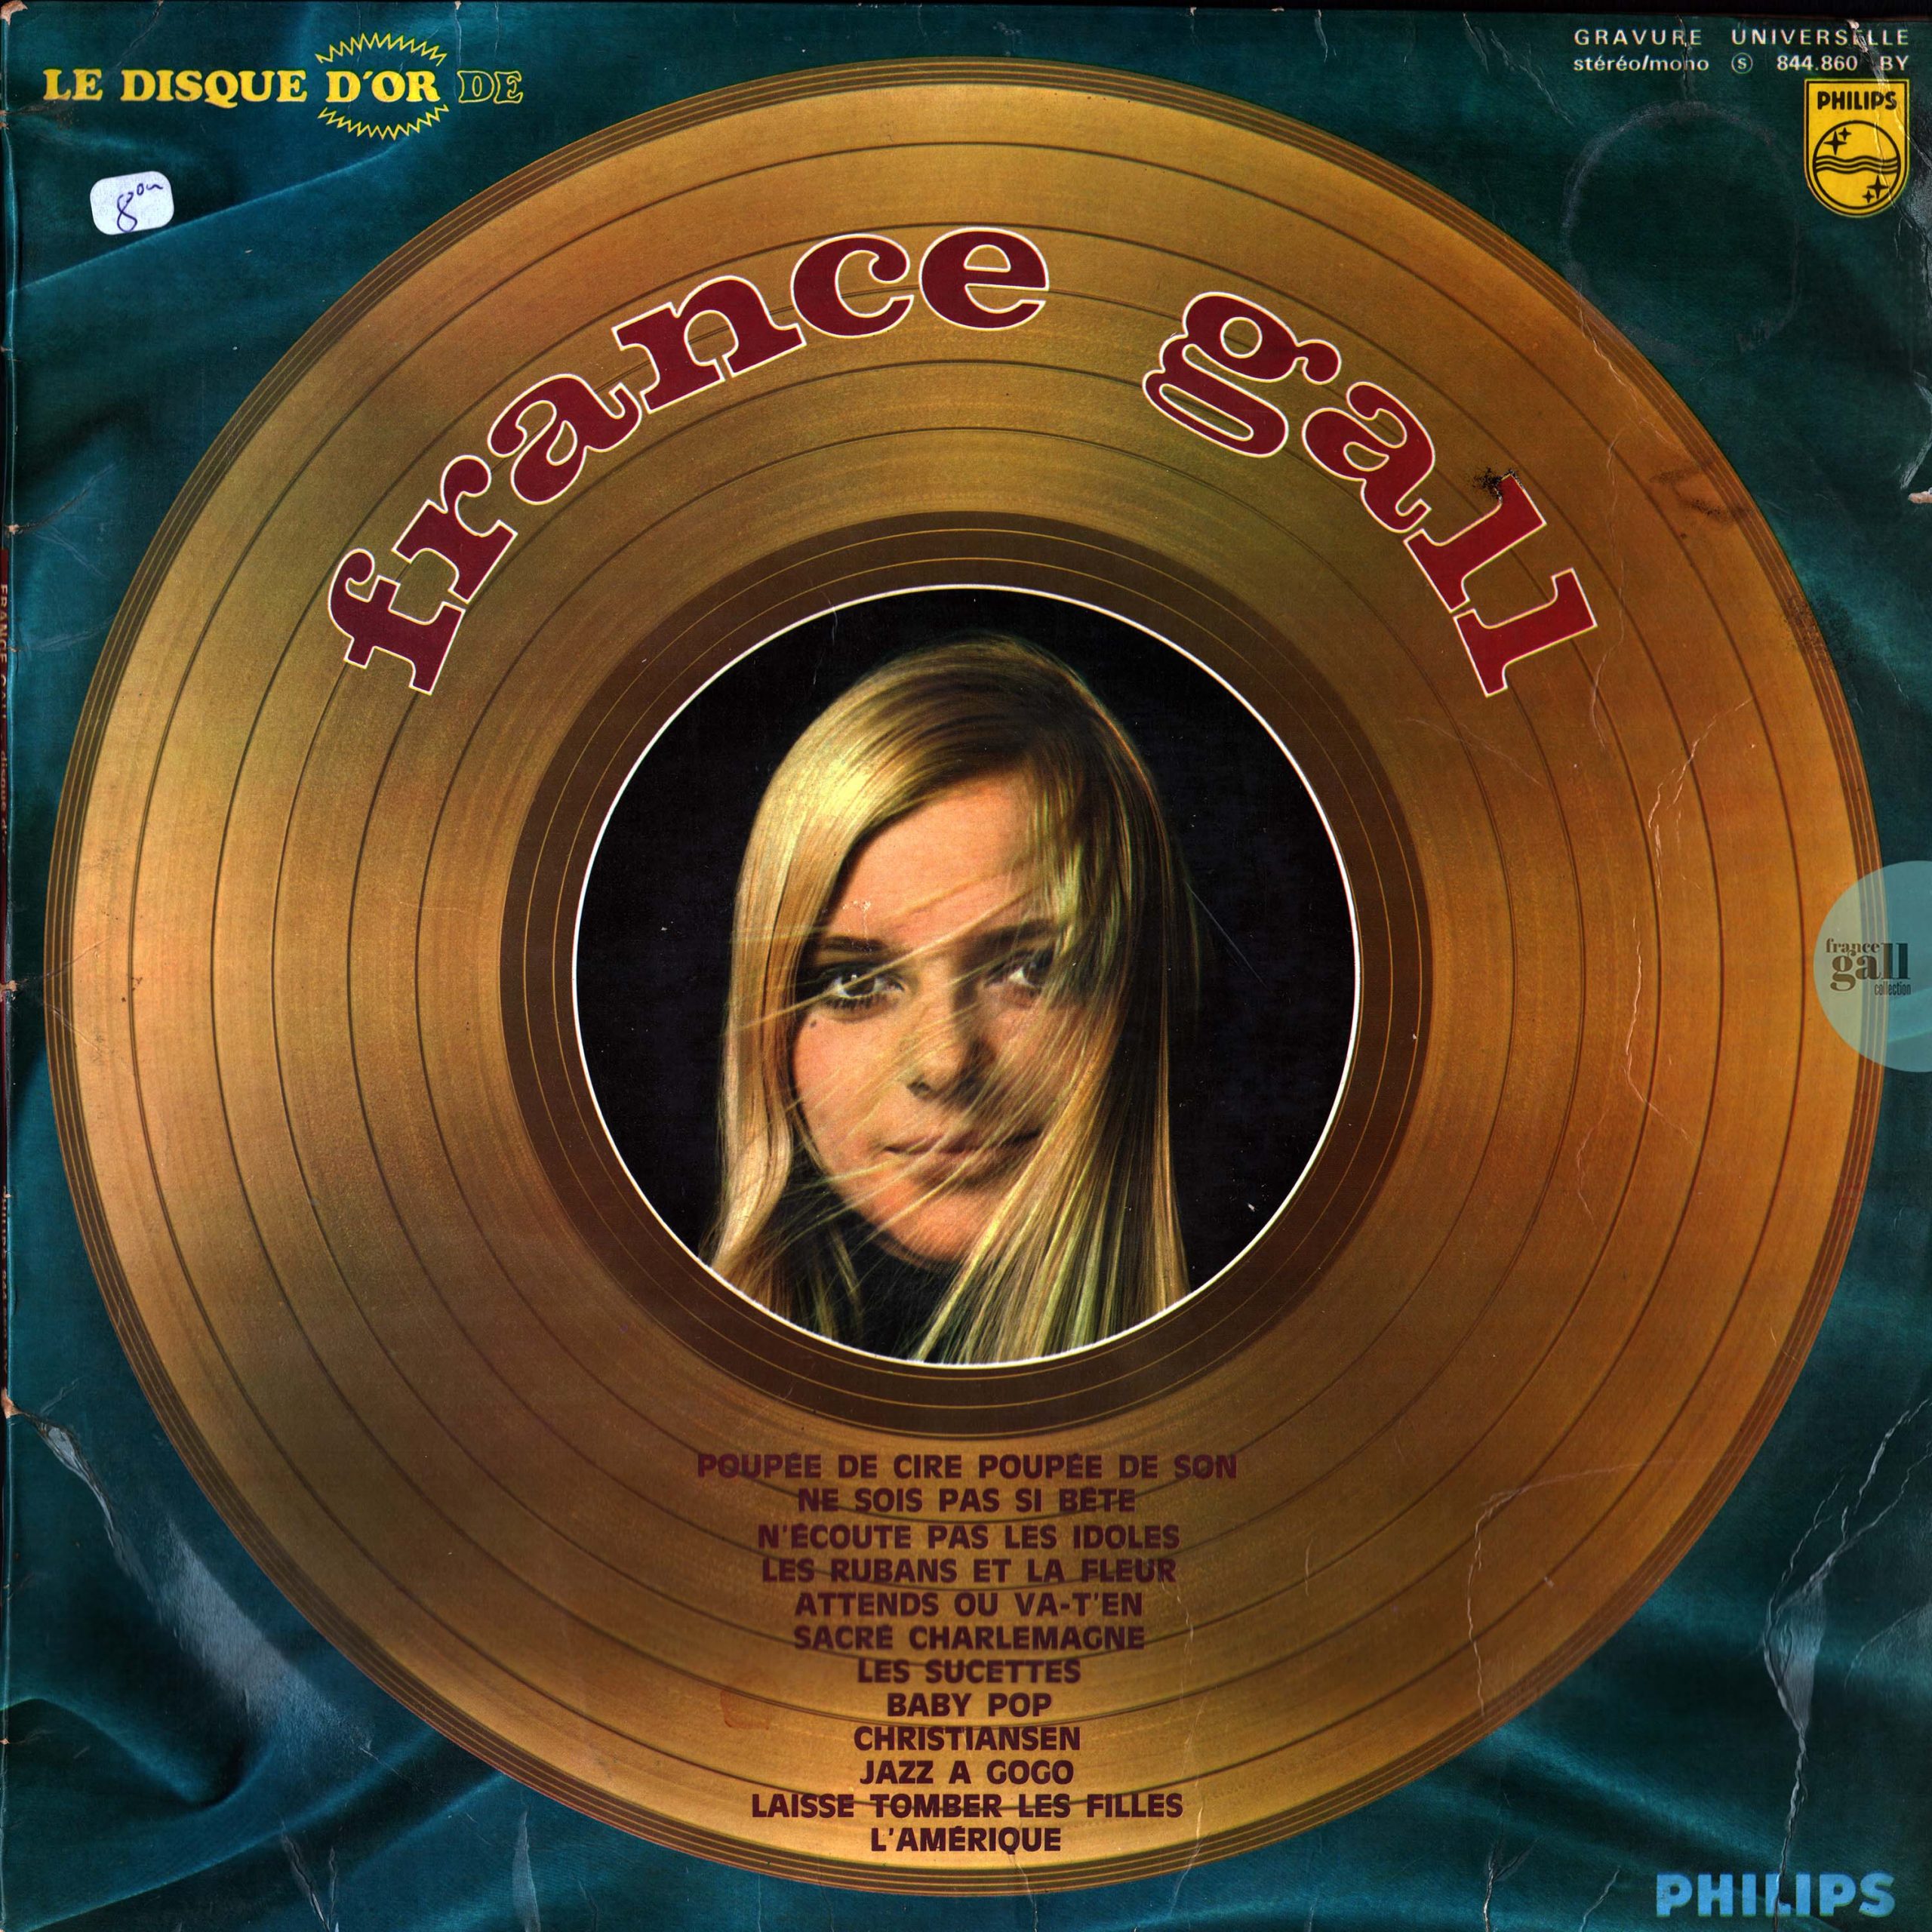 33t - Le disque d'or de France Gall (Compilation) - 1968